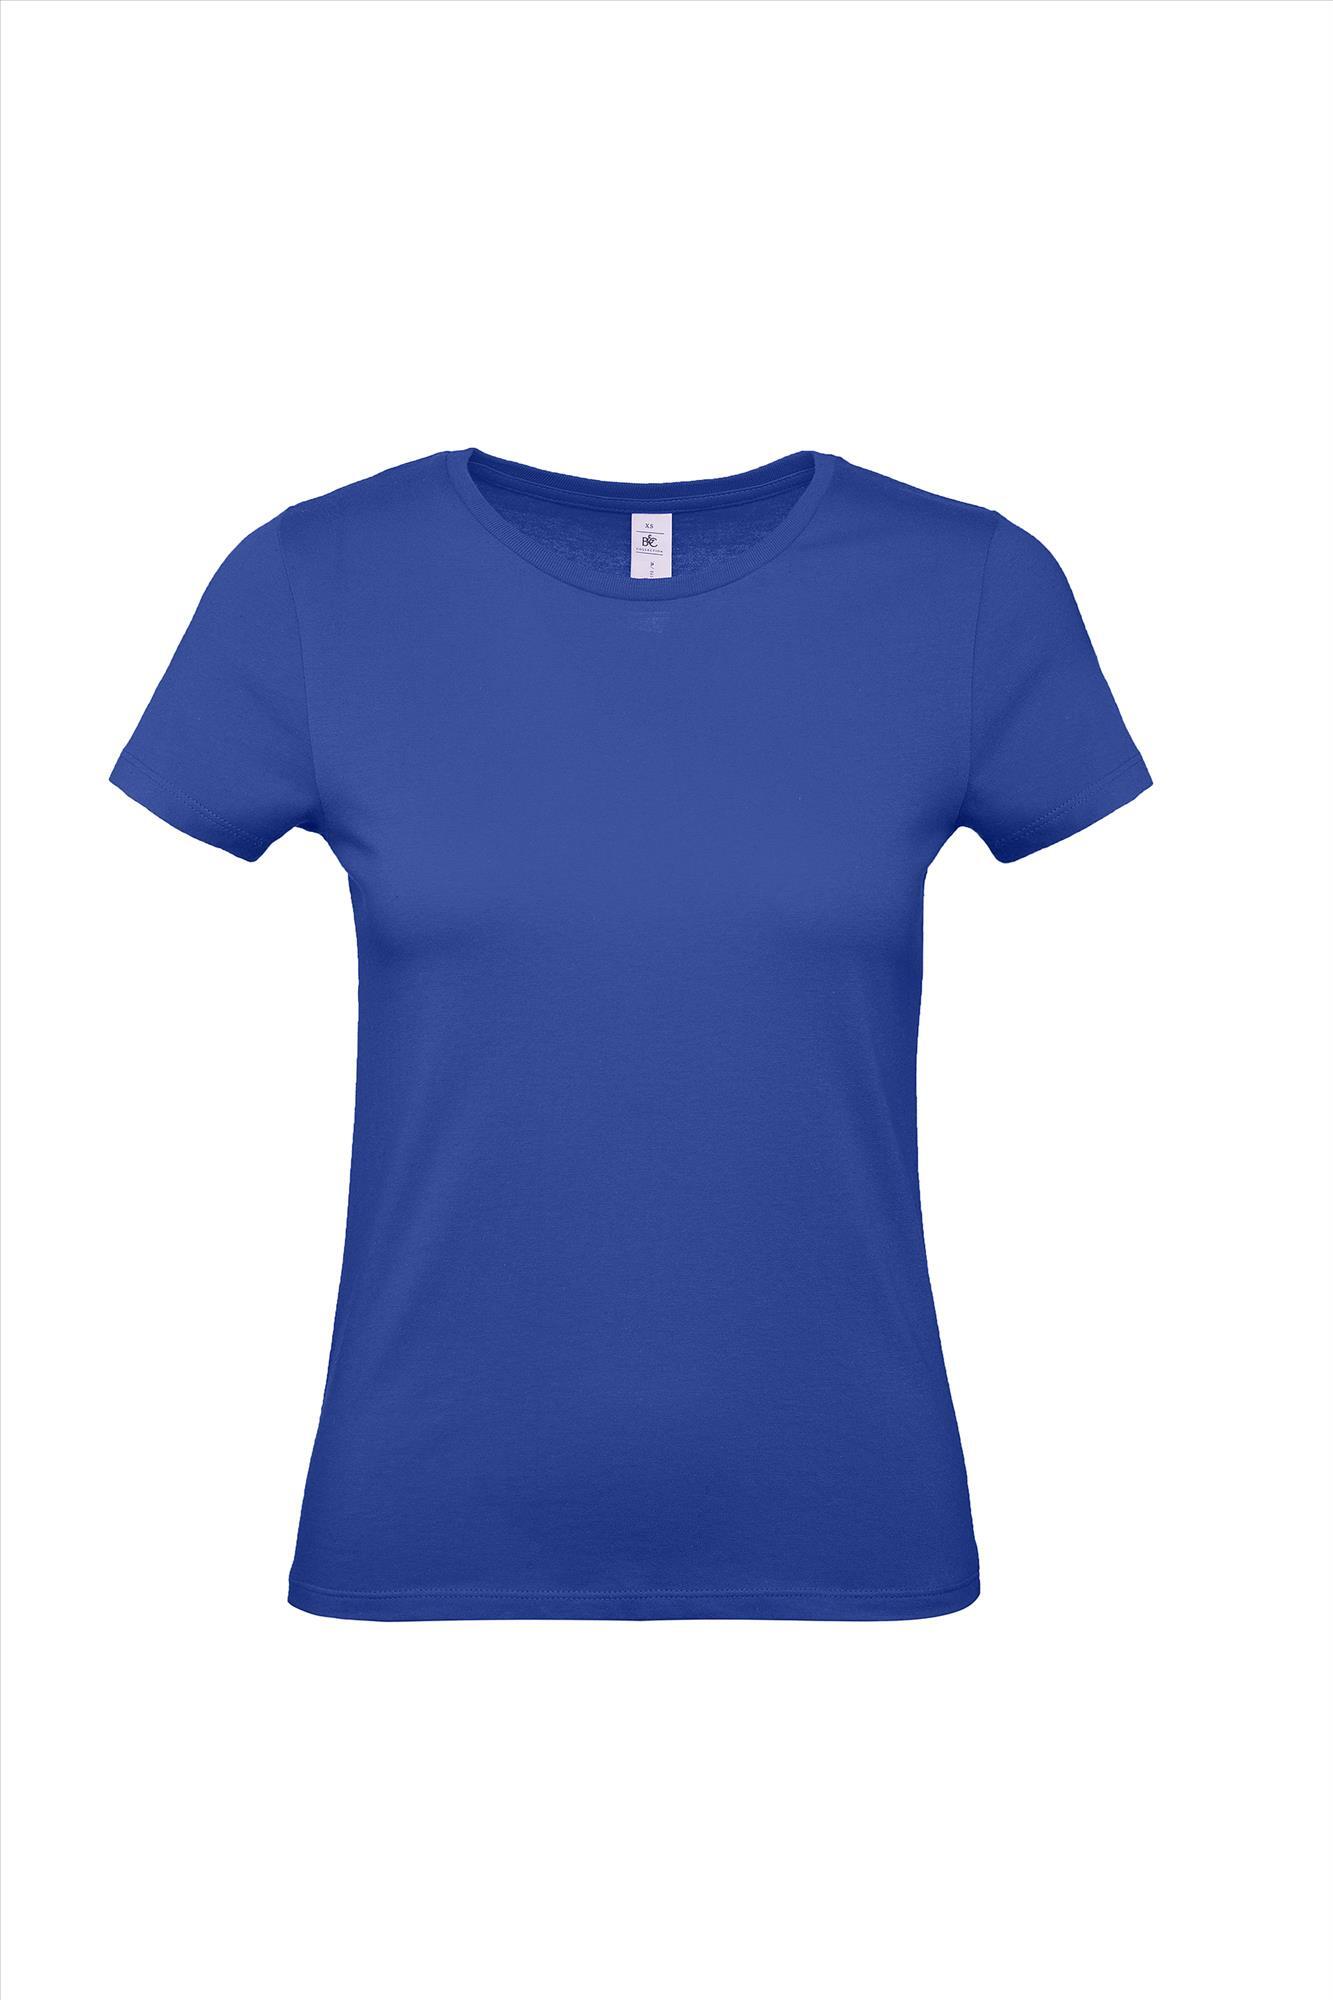 Modern T-shirt voor haar dames shirt kobaltblauw